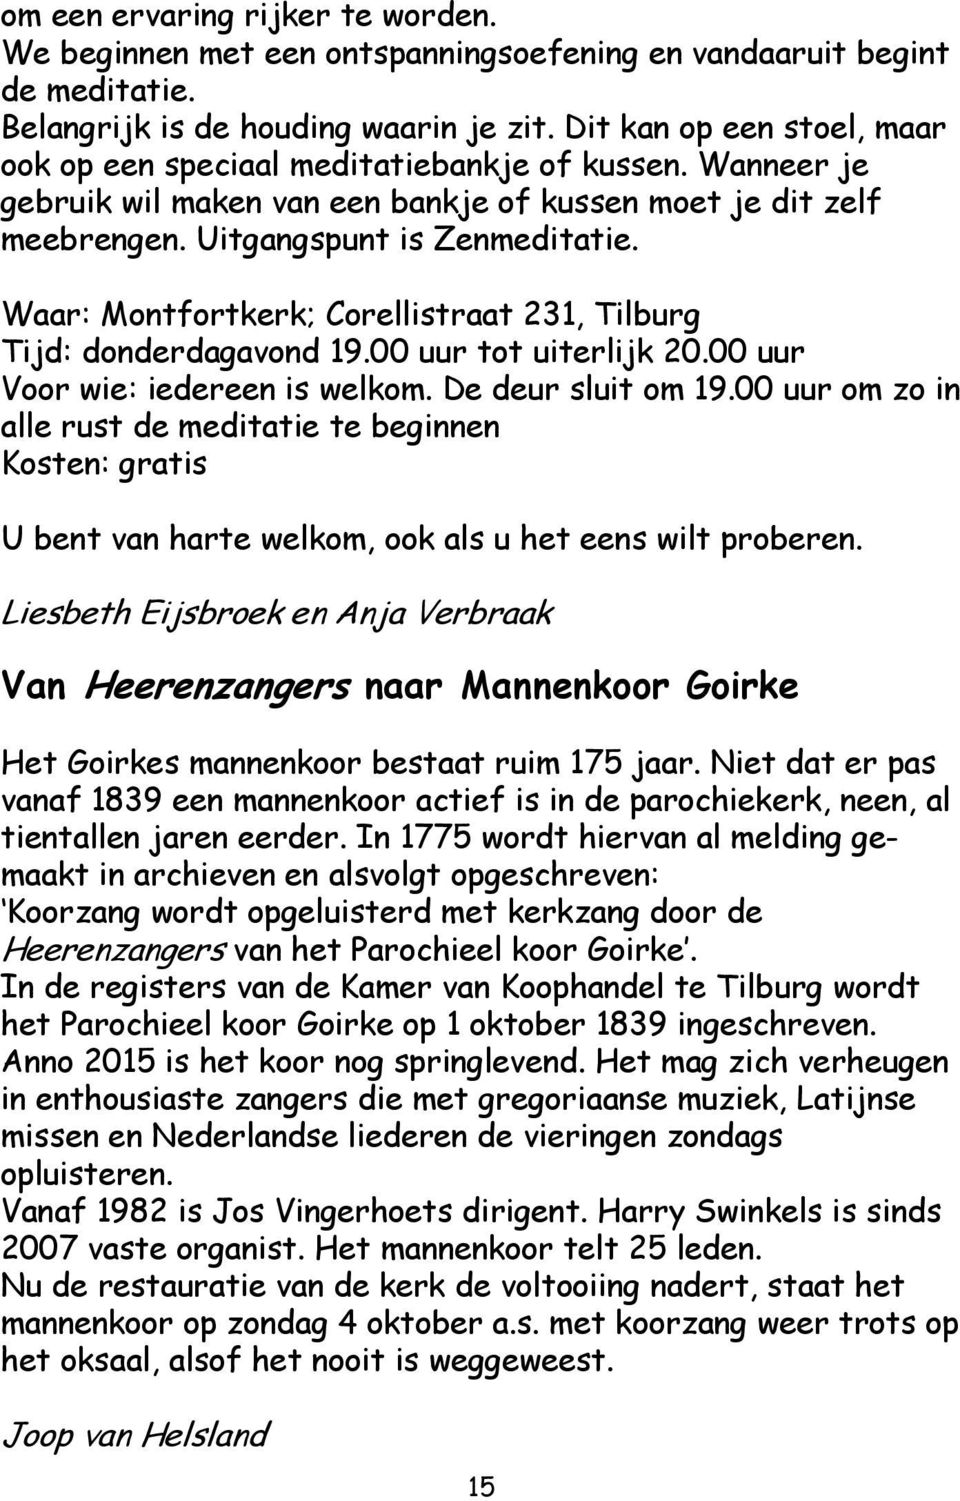 Waar: Montfortkerk; Corellistraat 231, Tilburg Tijd: donderdagavond 19.00 uur tot uiterlijk 20.00 uur Voor wie: iedereen is welkom. De deur sluit om 19.